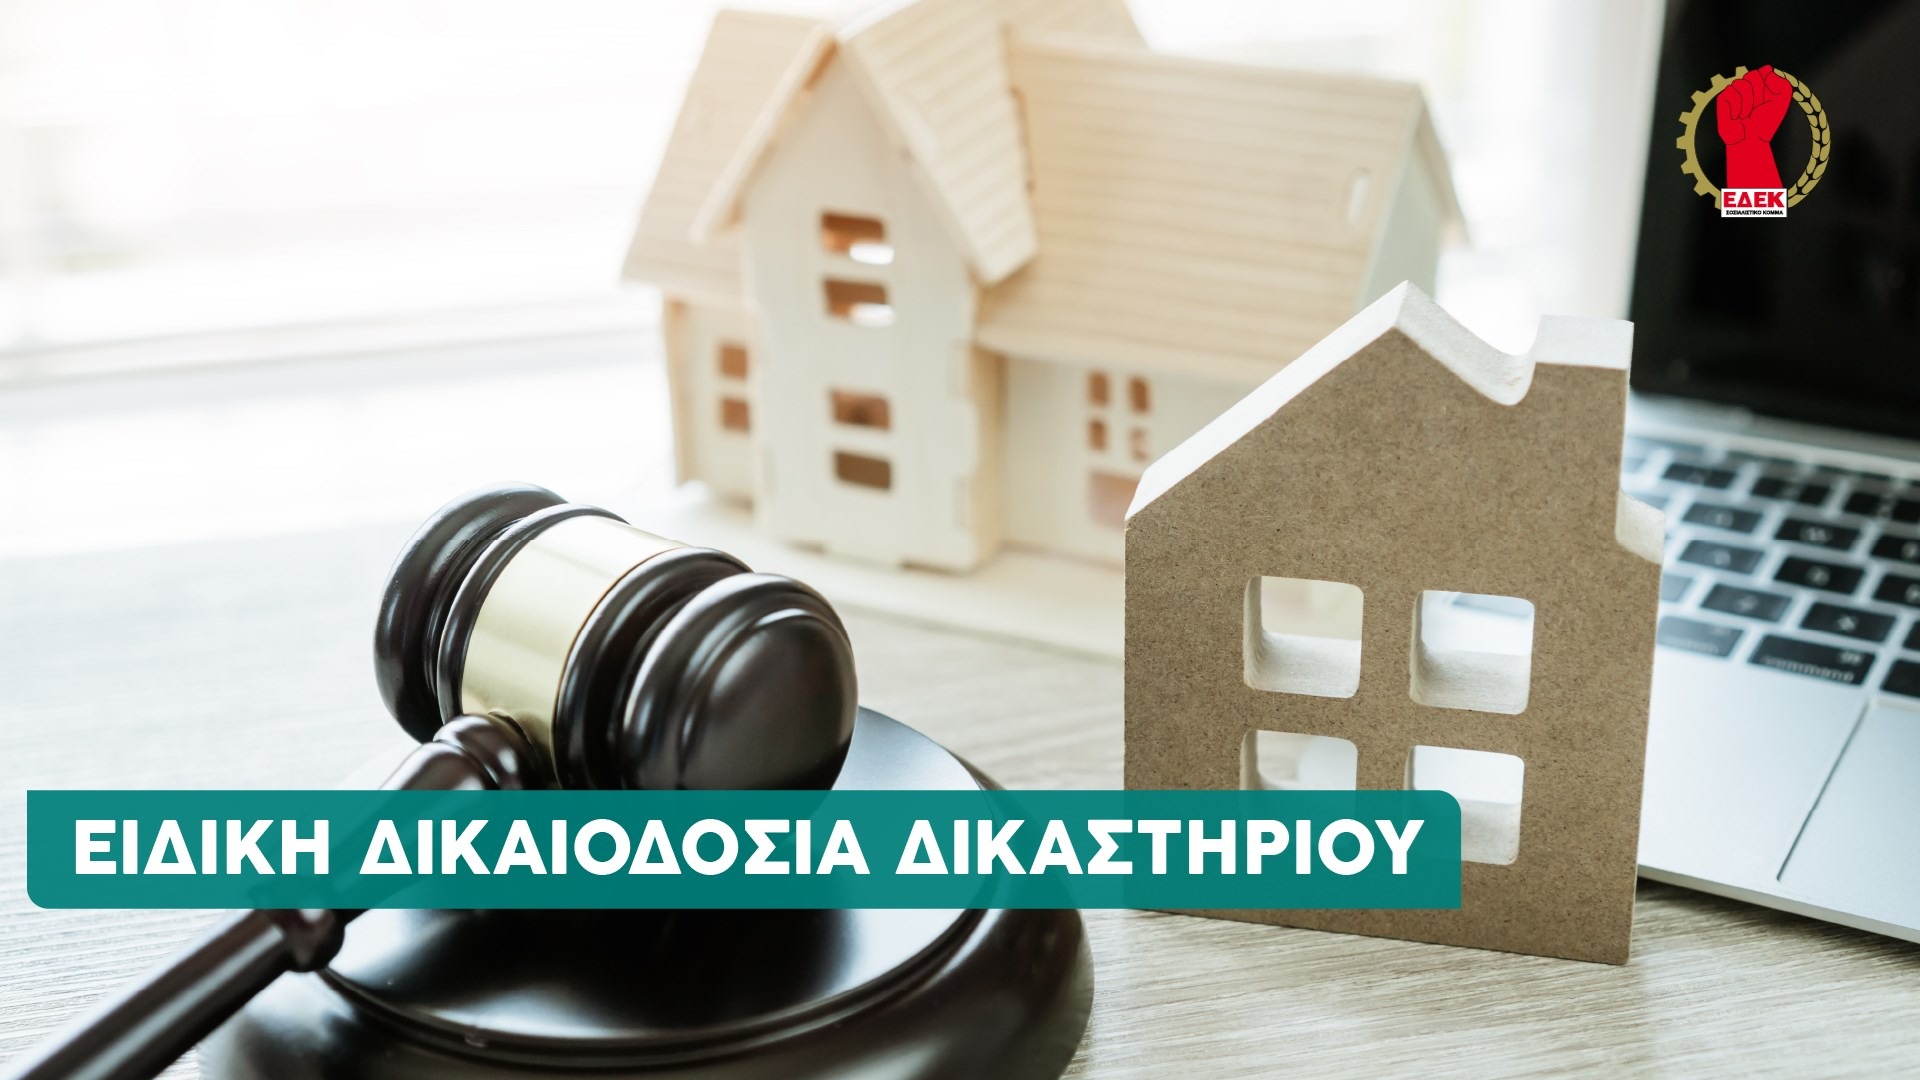 Η ΕΔΕΚ θα καταθέσει τροπολογίες στο νομοσχέδιο για τη σύσταση τμήματος ειδικής δικαιοδοσίας στα επαρχιακά δικαστήρια για υποθέσεις δανειοληπτών